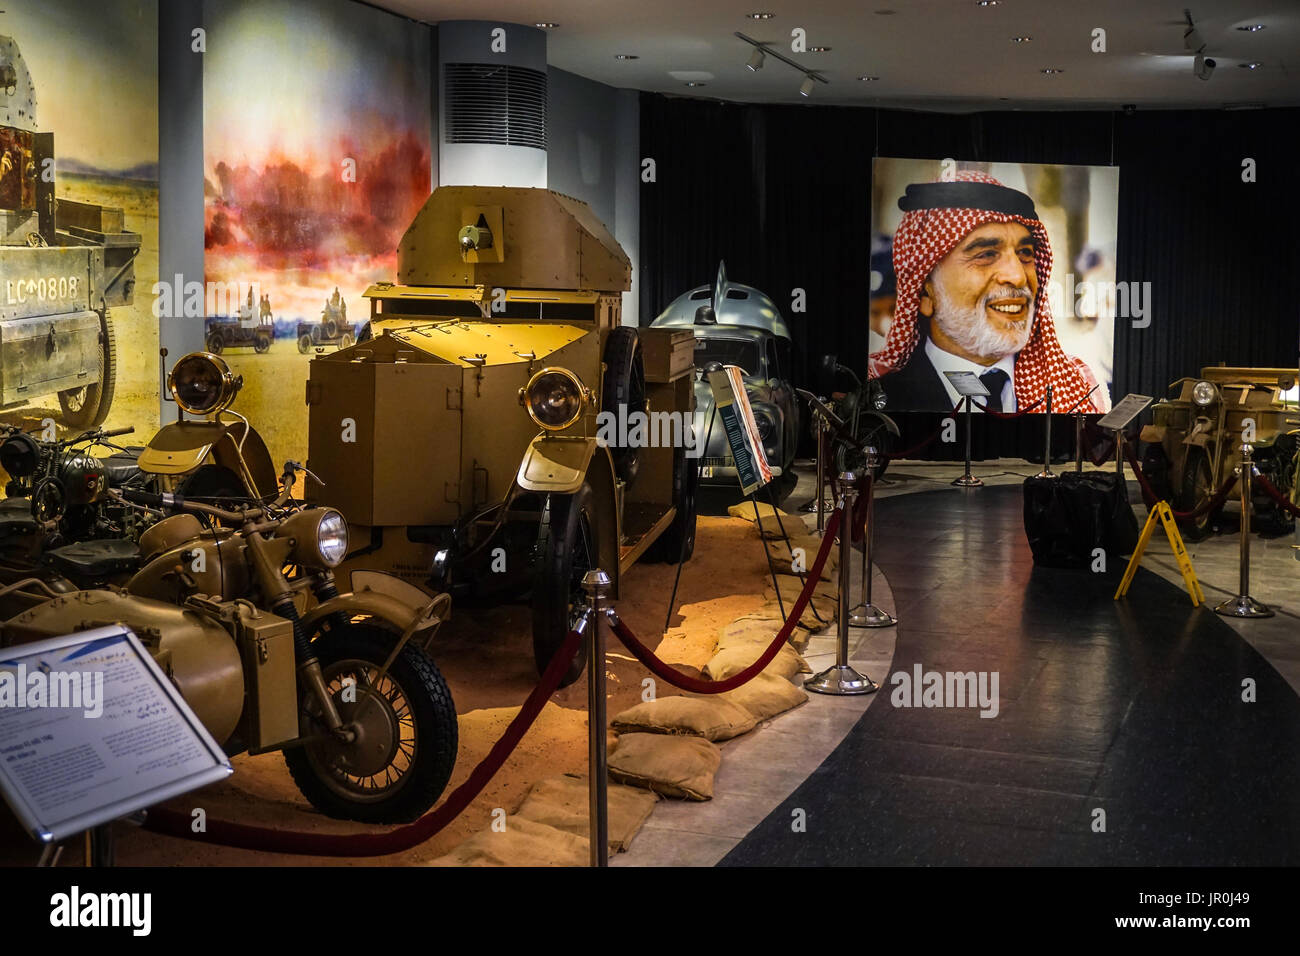 Royal Automobile Museum, Amman, Jordanie Banque D'Images